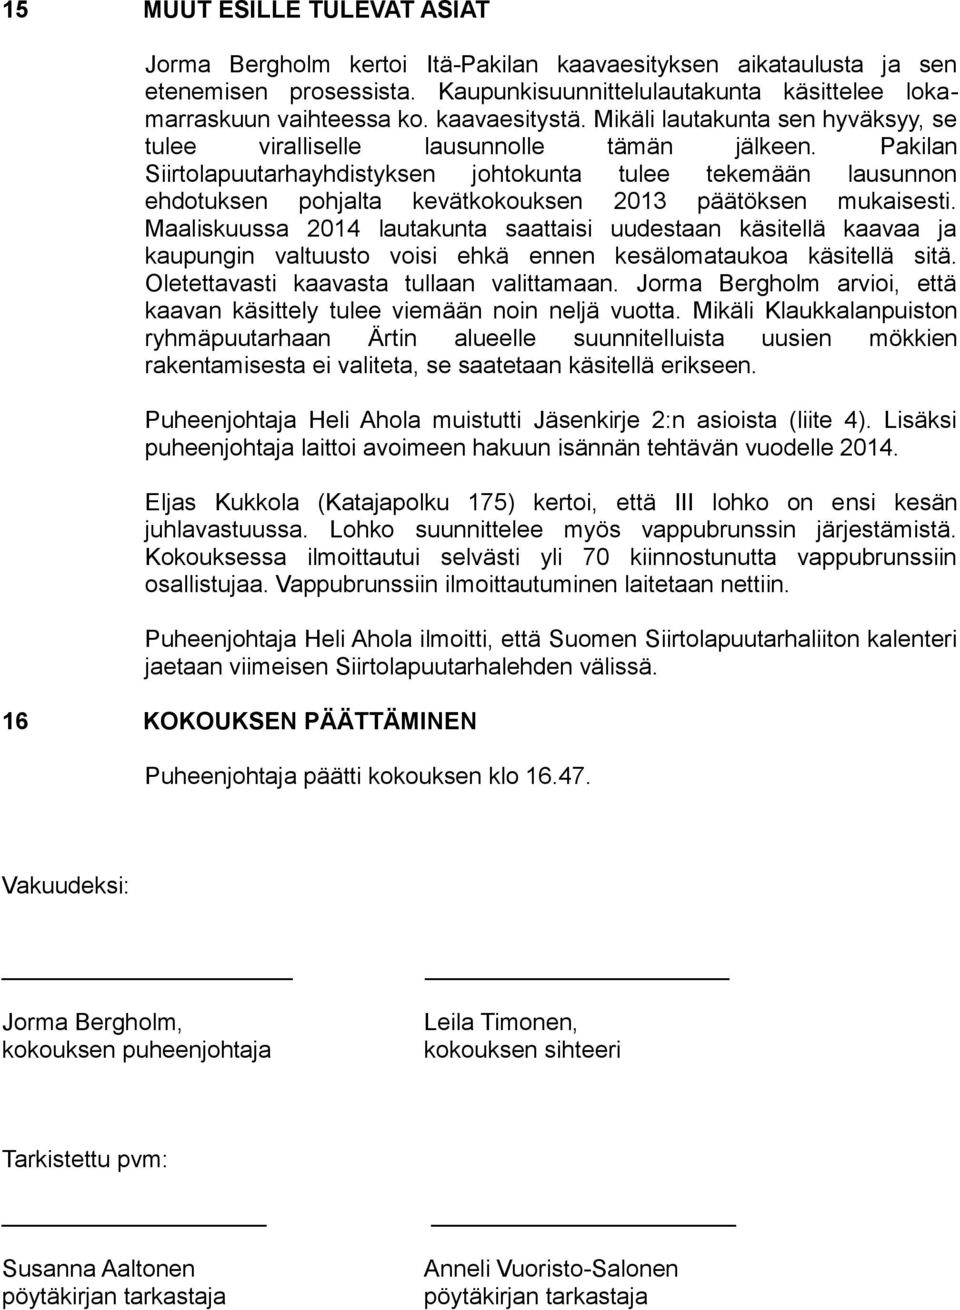 Pakilan Siirtolapuutarhayhdistyksen johtokunta tulee tekemään lausunnon ehdotuksen pohjalta kevätkokouksen 2013 päätöksen mukaisesti.